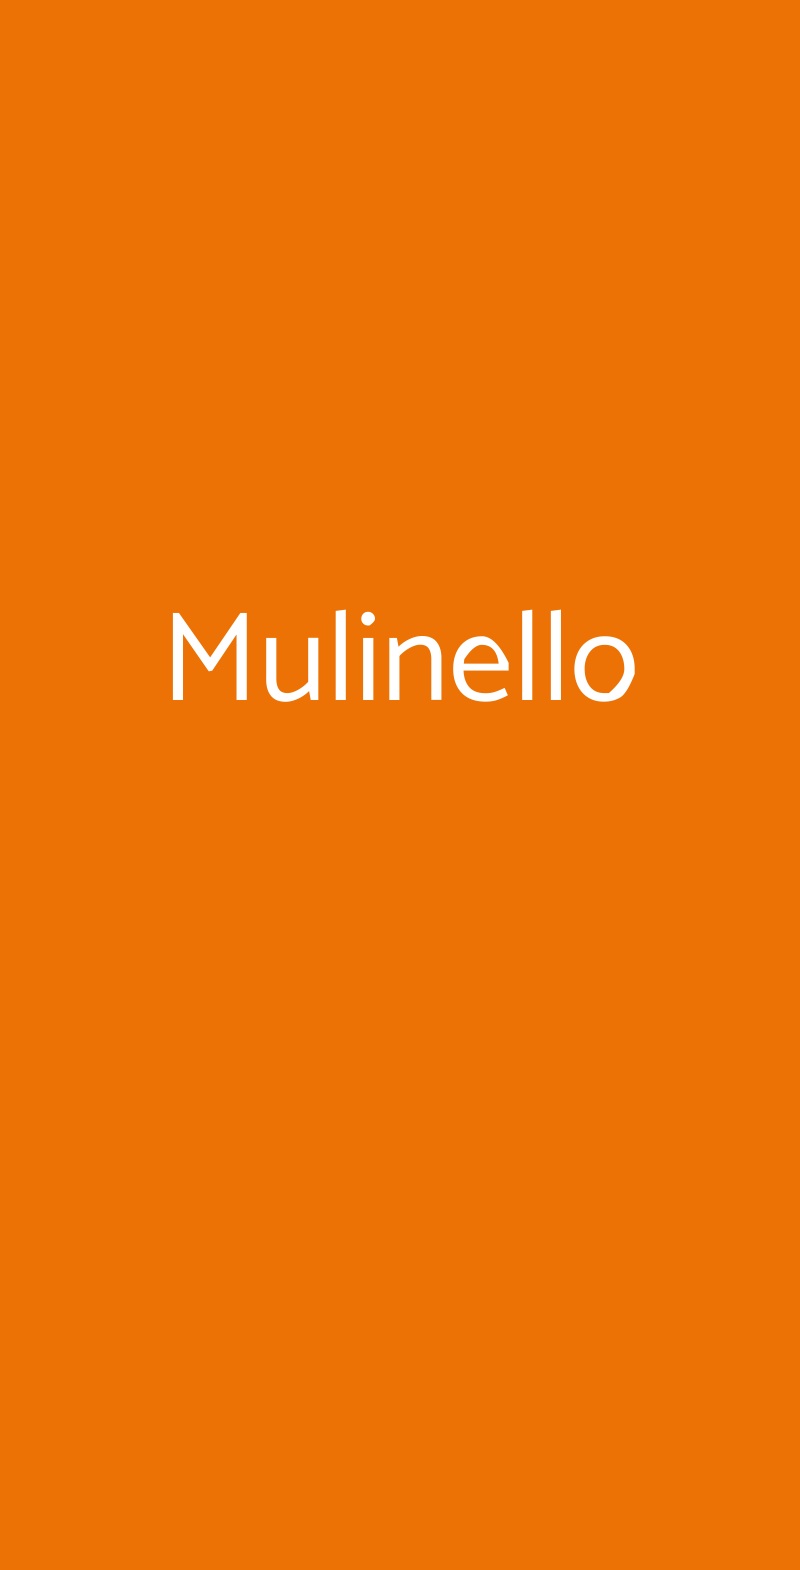 Mulinello Venezia menù 1 pagina